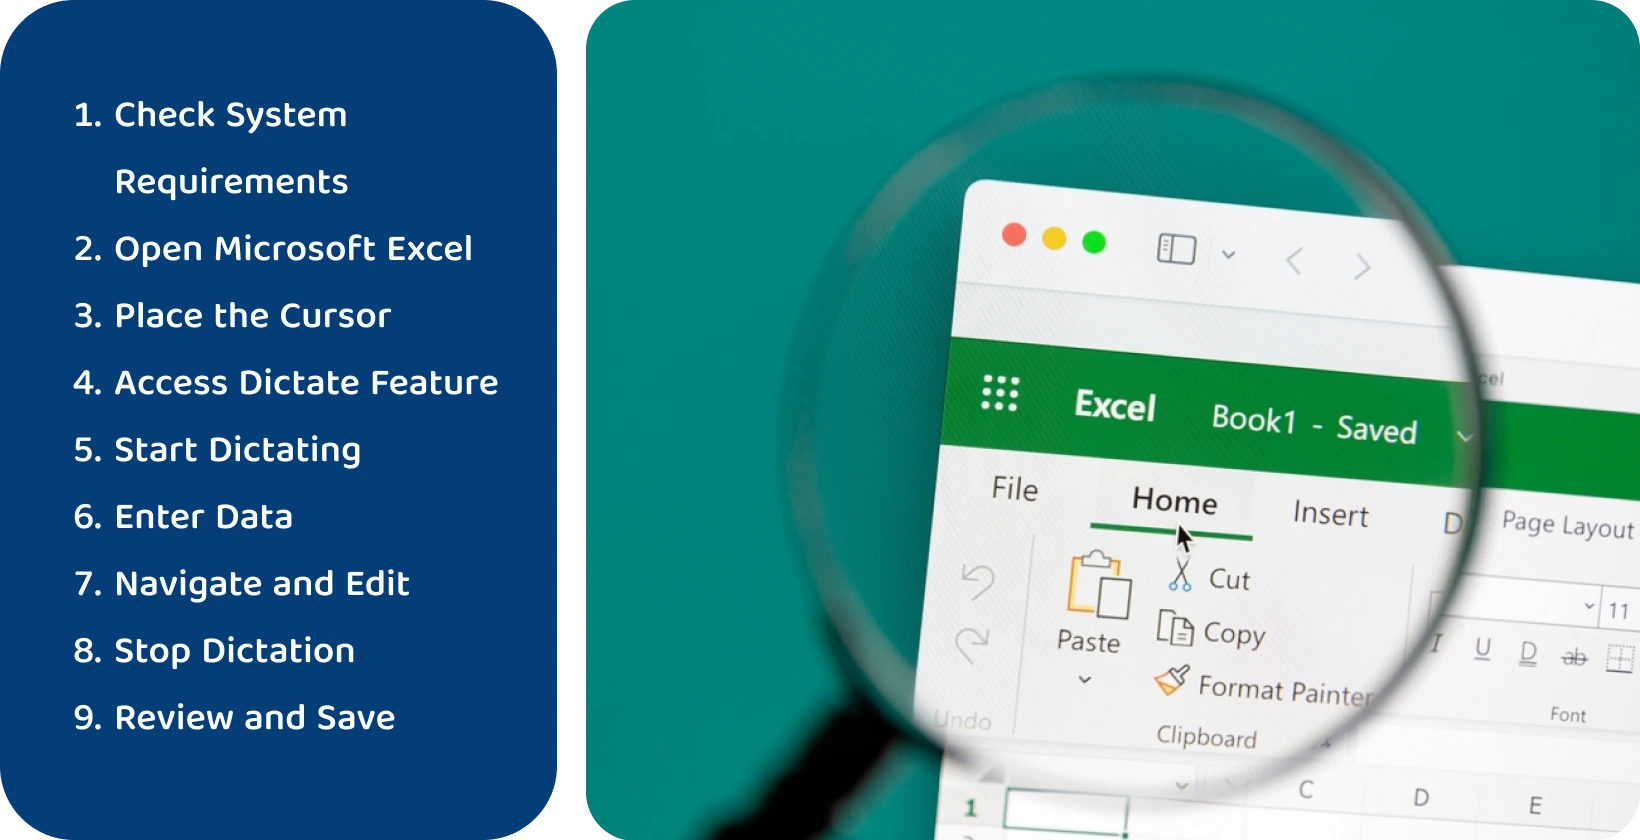 Koristite funkciju diktiranja u Excel za učinkovito prepisivanje govora u tekst, kao što je prikazano kroz uvećano sučelje.